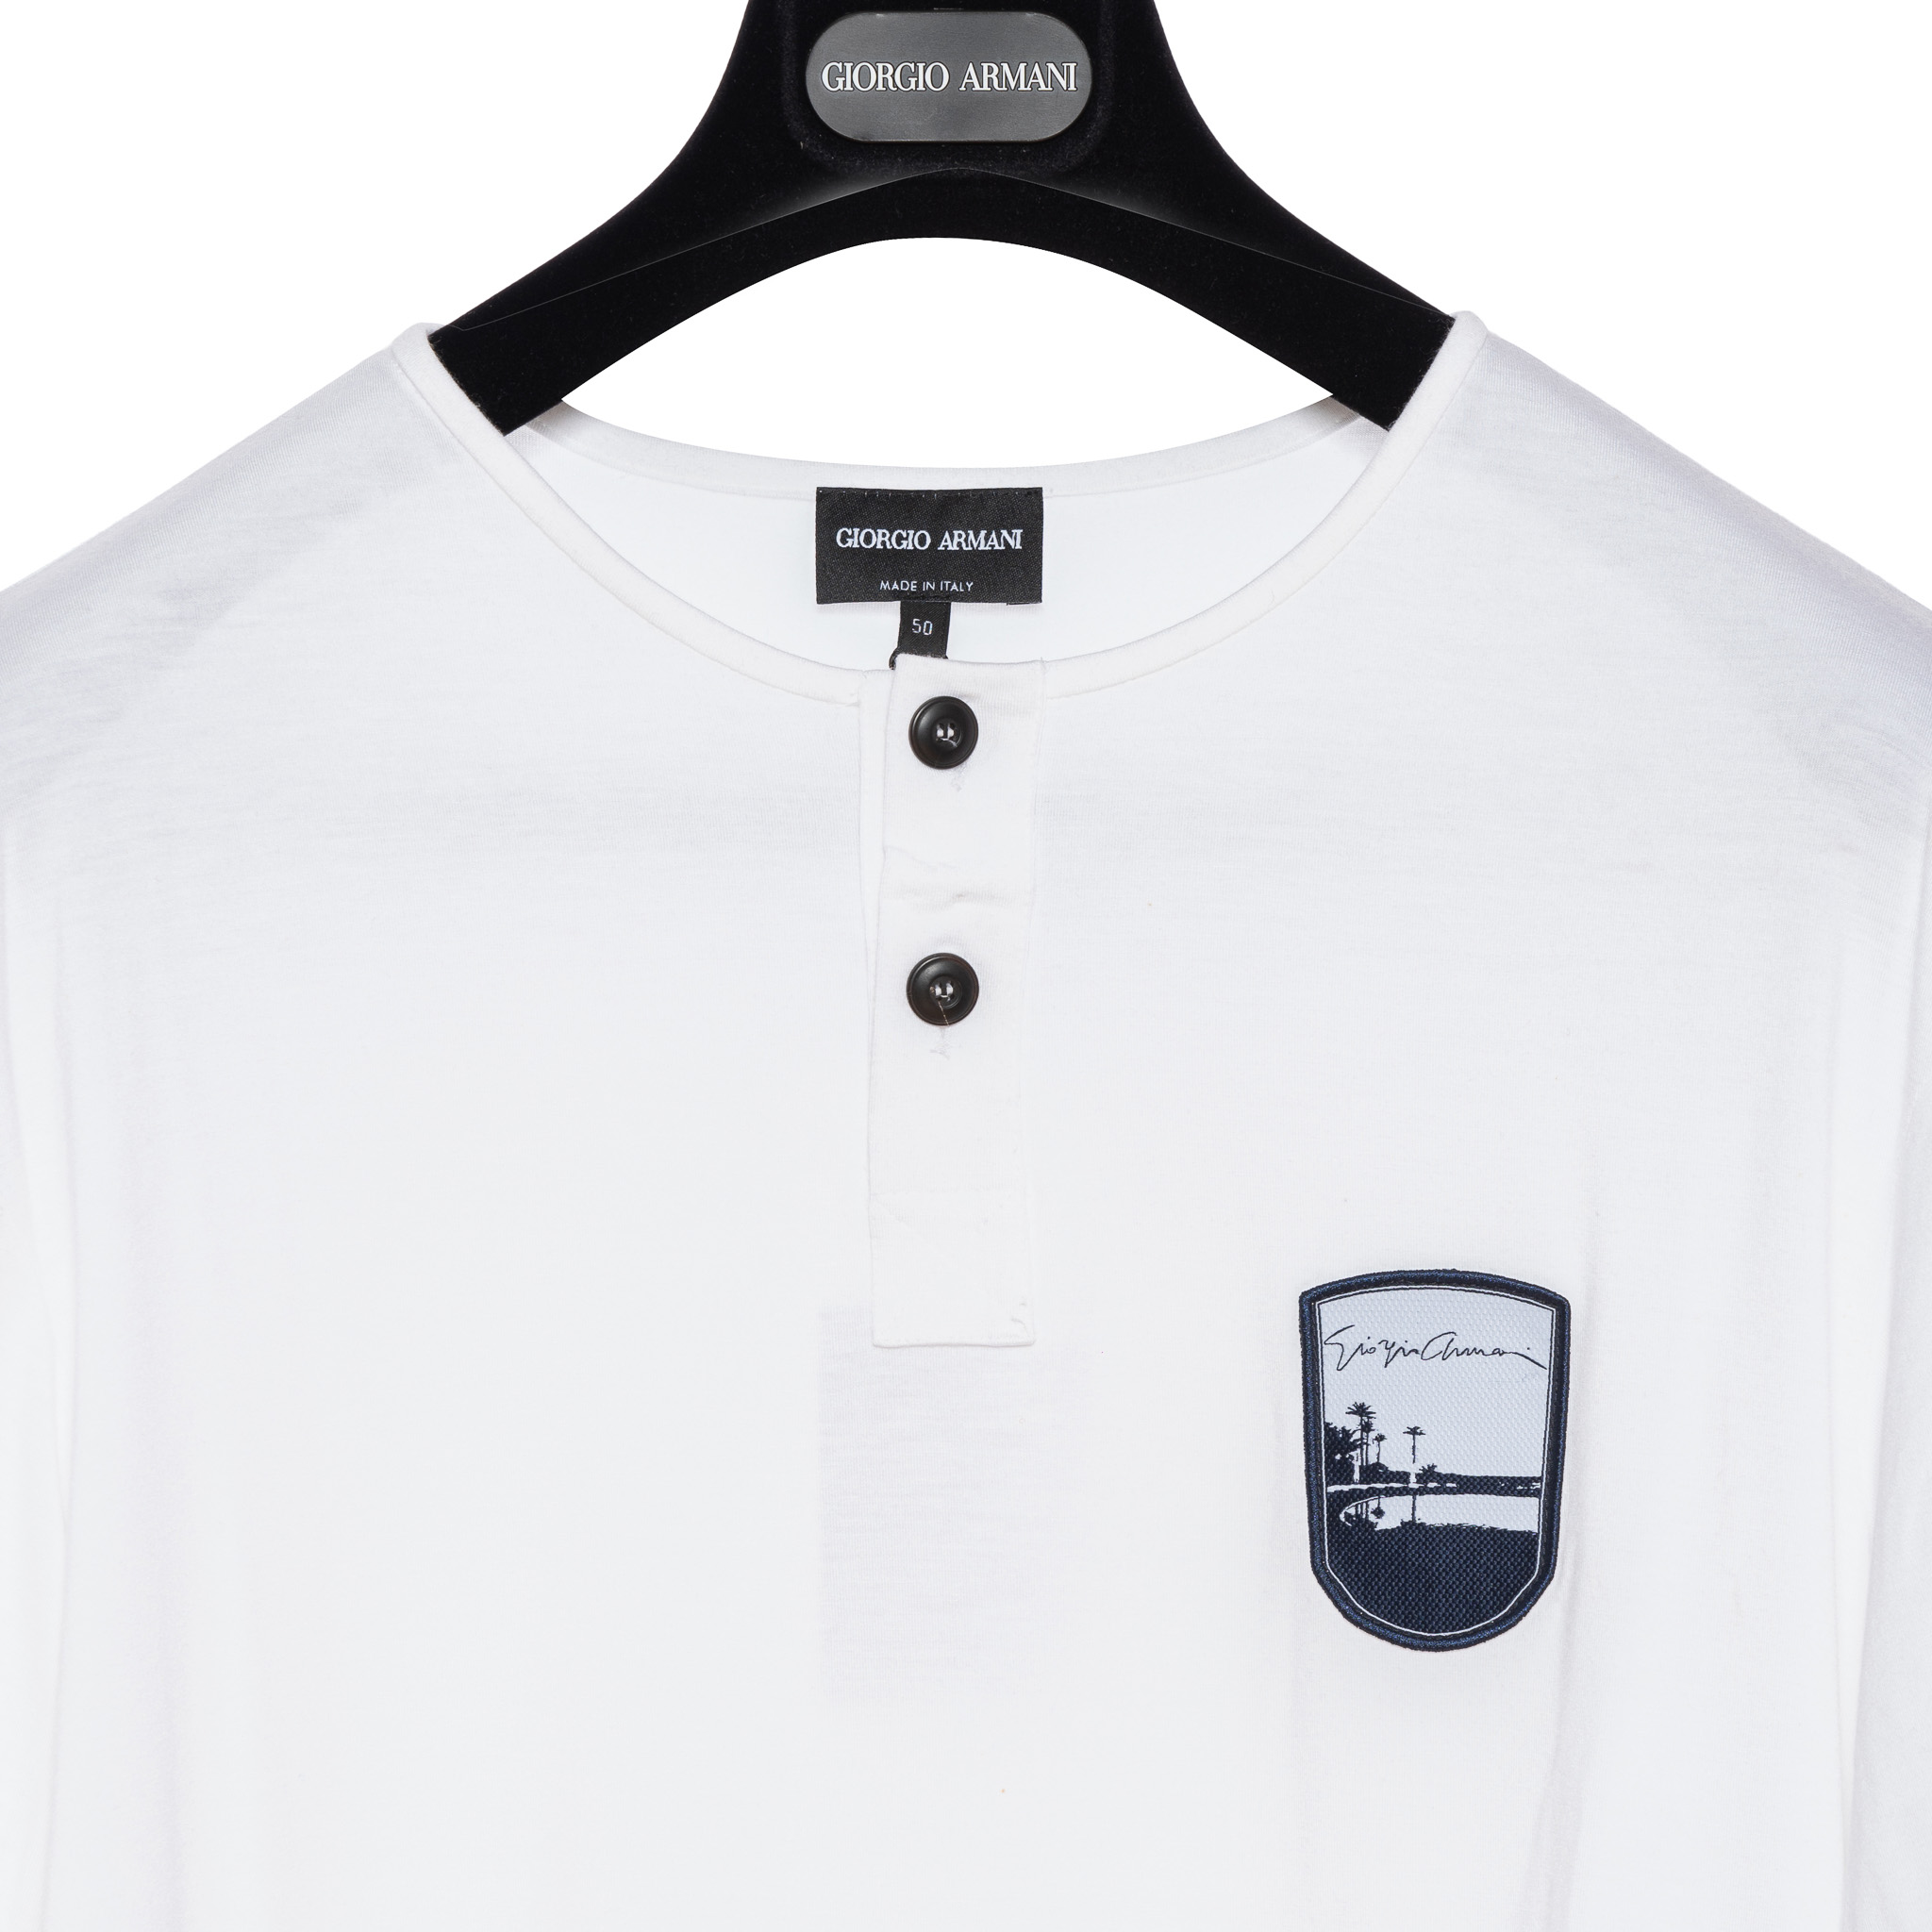 490$ GIORGIO ARMANI T-shirt Polo Henley White Brand Logo on Chest 40 US /  50 EU - Luxgentleman